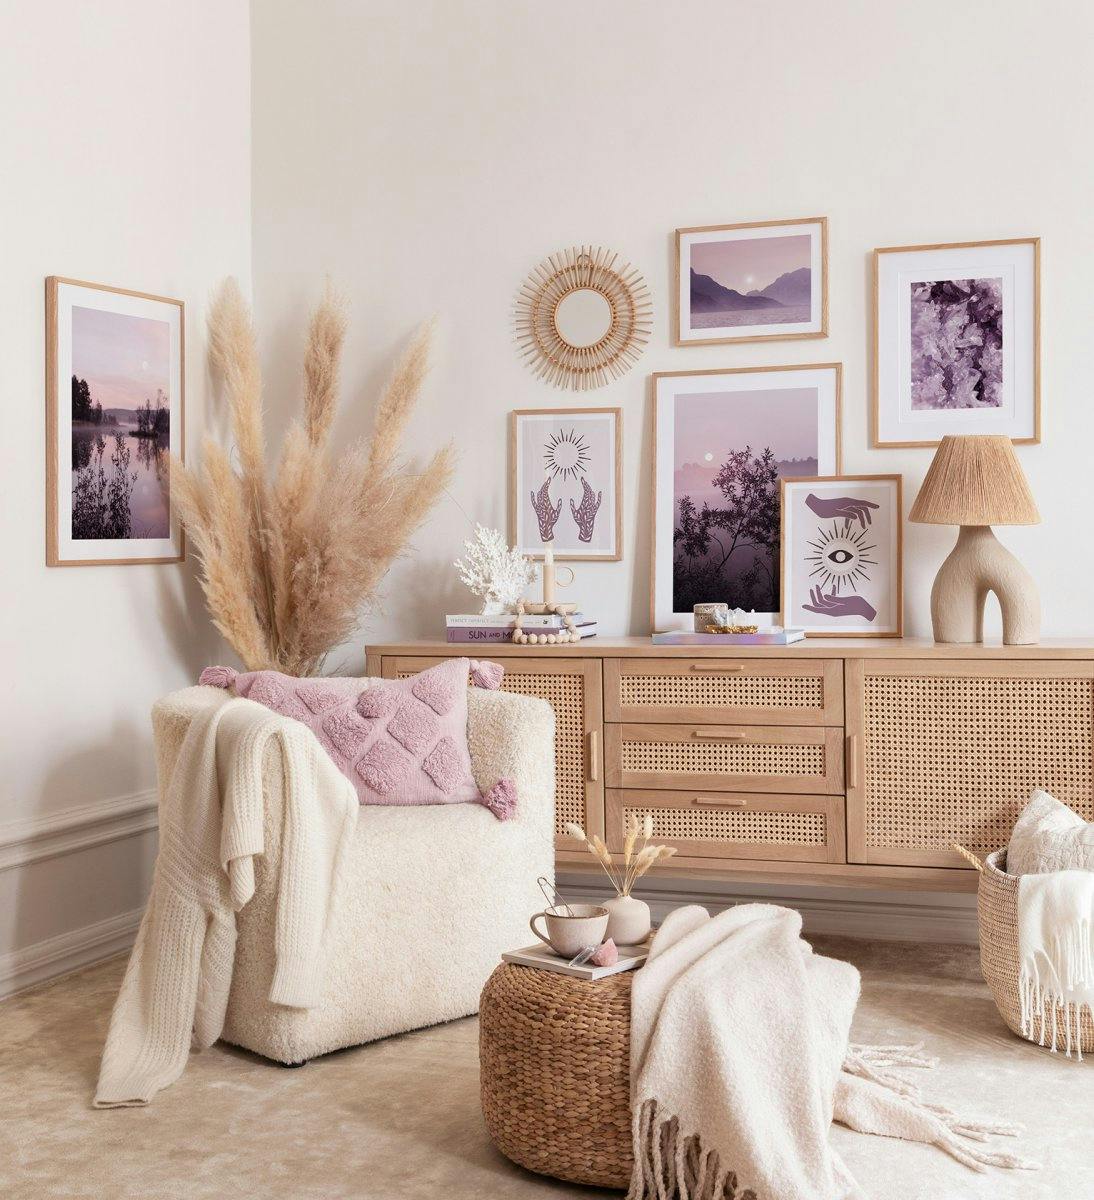 Galeria w kolorze uspokajajacego fioletu, z motywami krajobrazu w dębowych ramkach, idealna do salonu